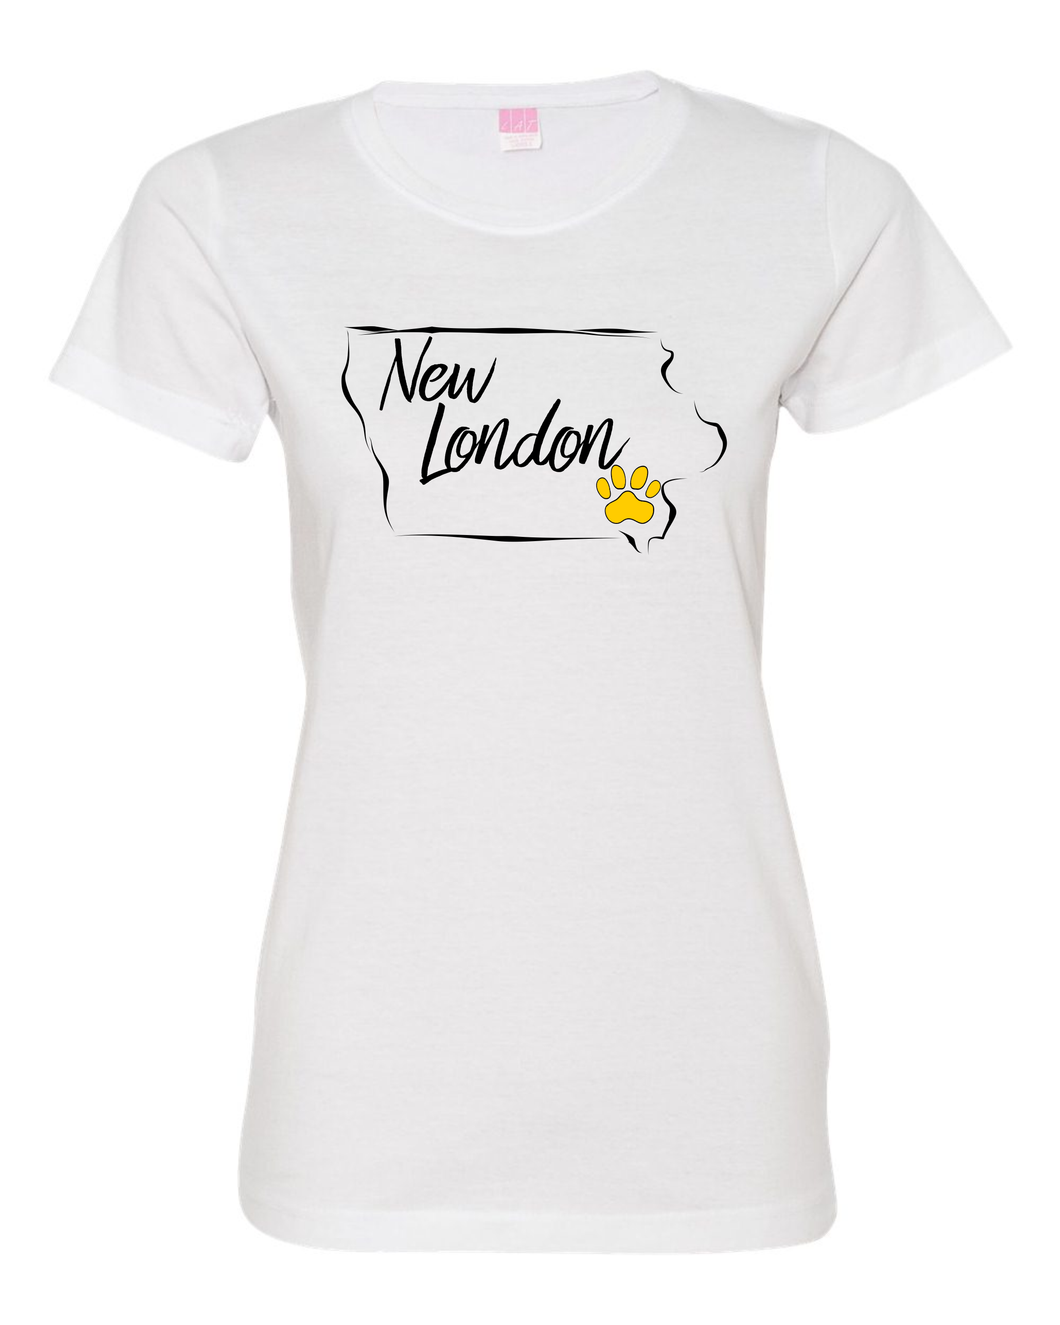 New London Women's T-Shirt